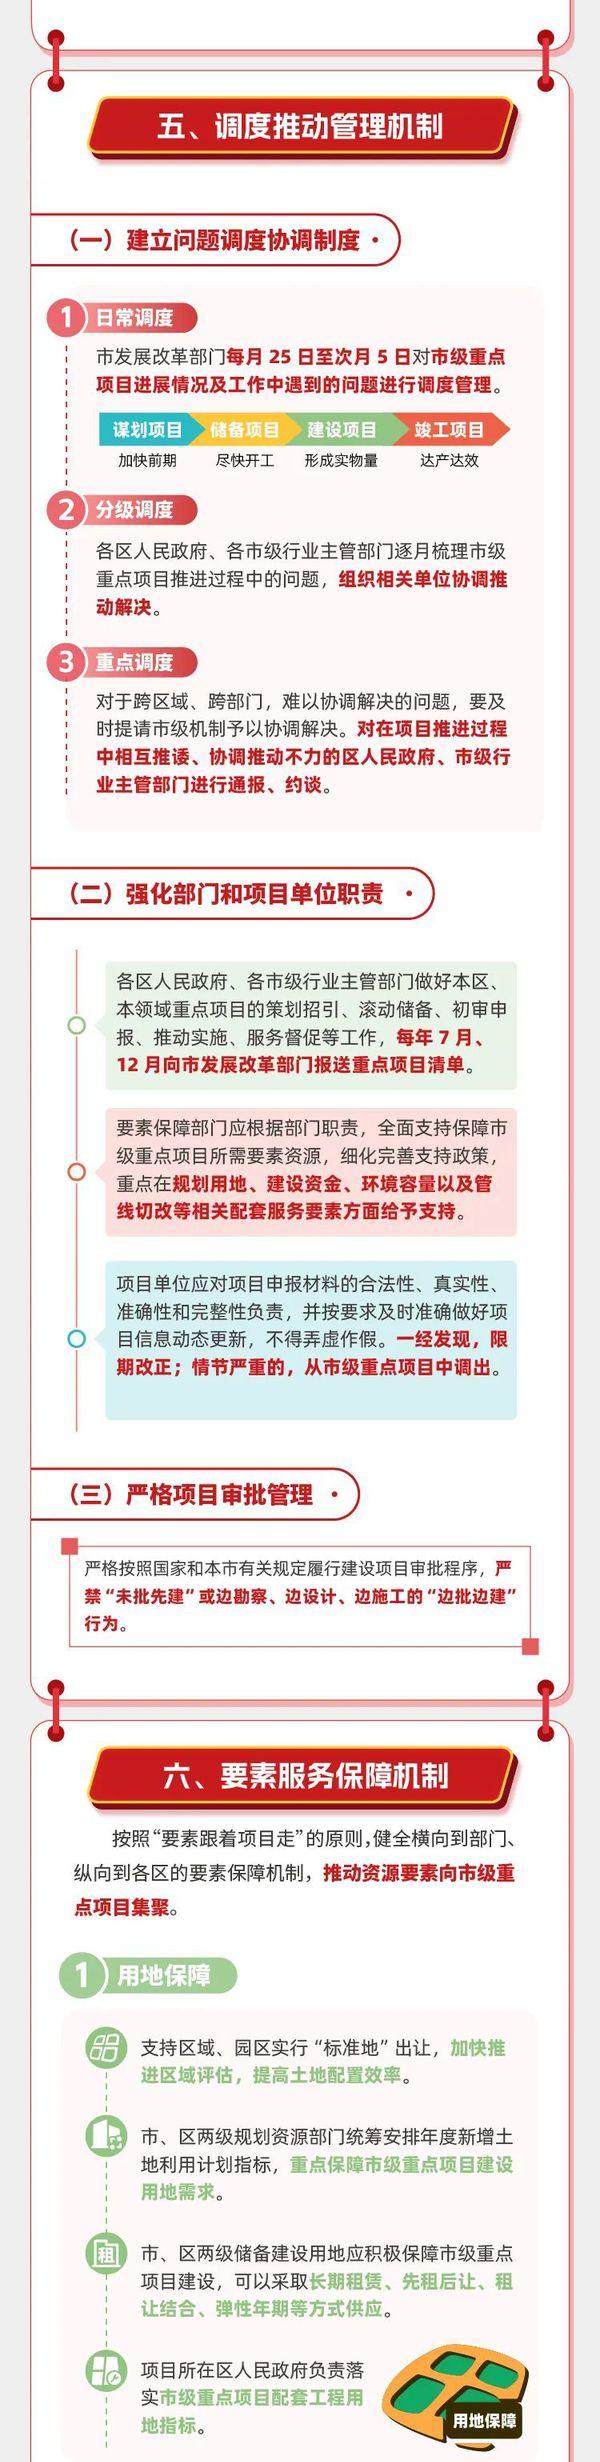 重磅丨天津市重点项目管理办法